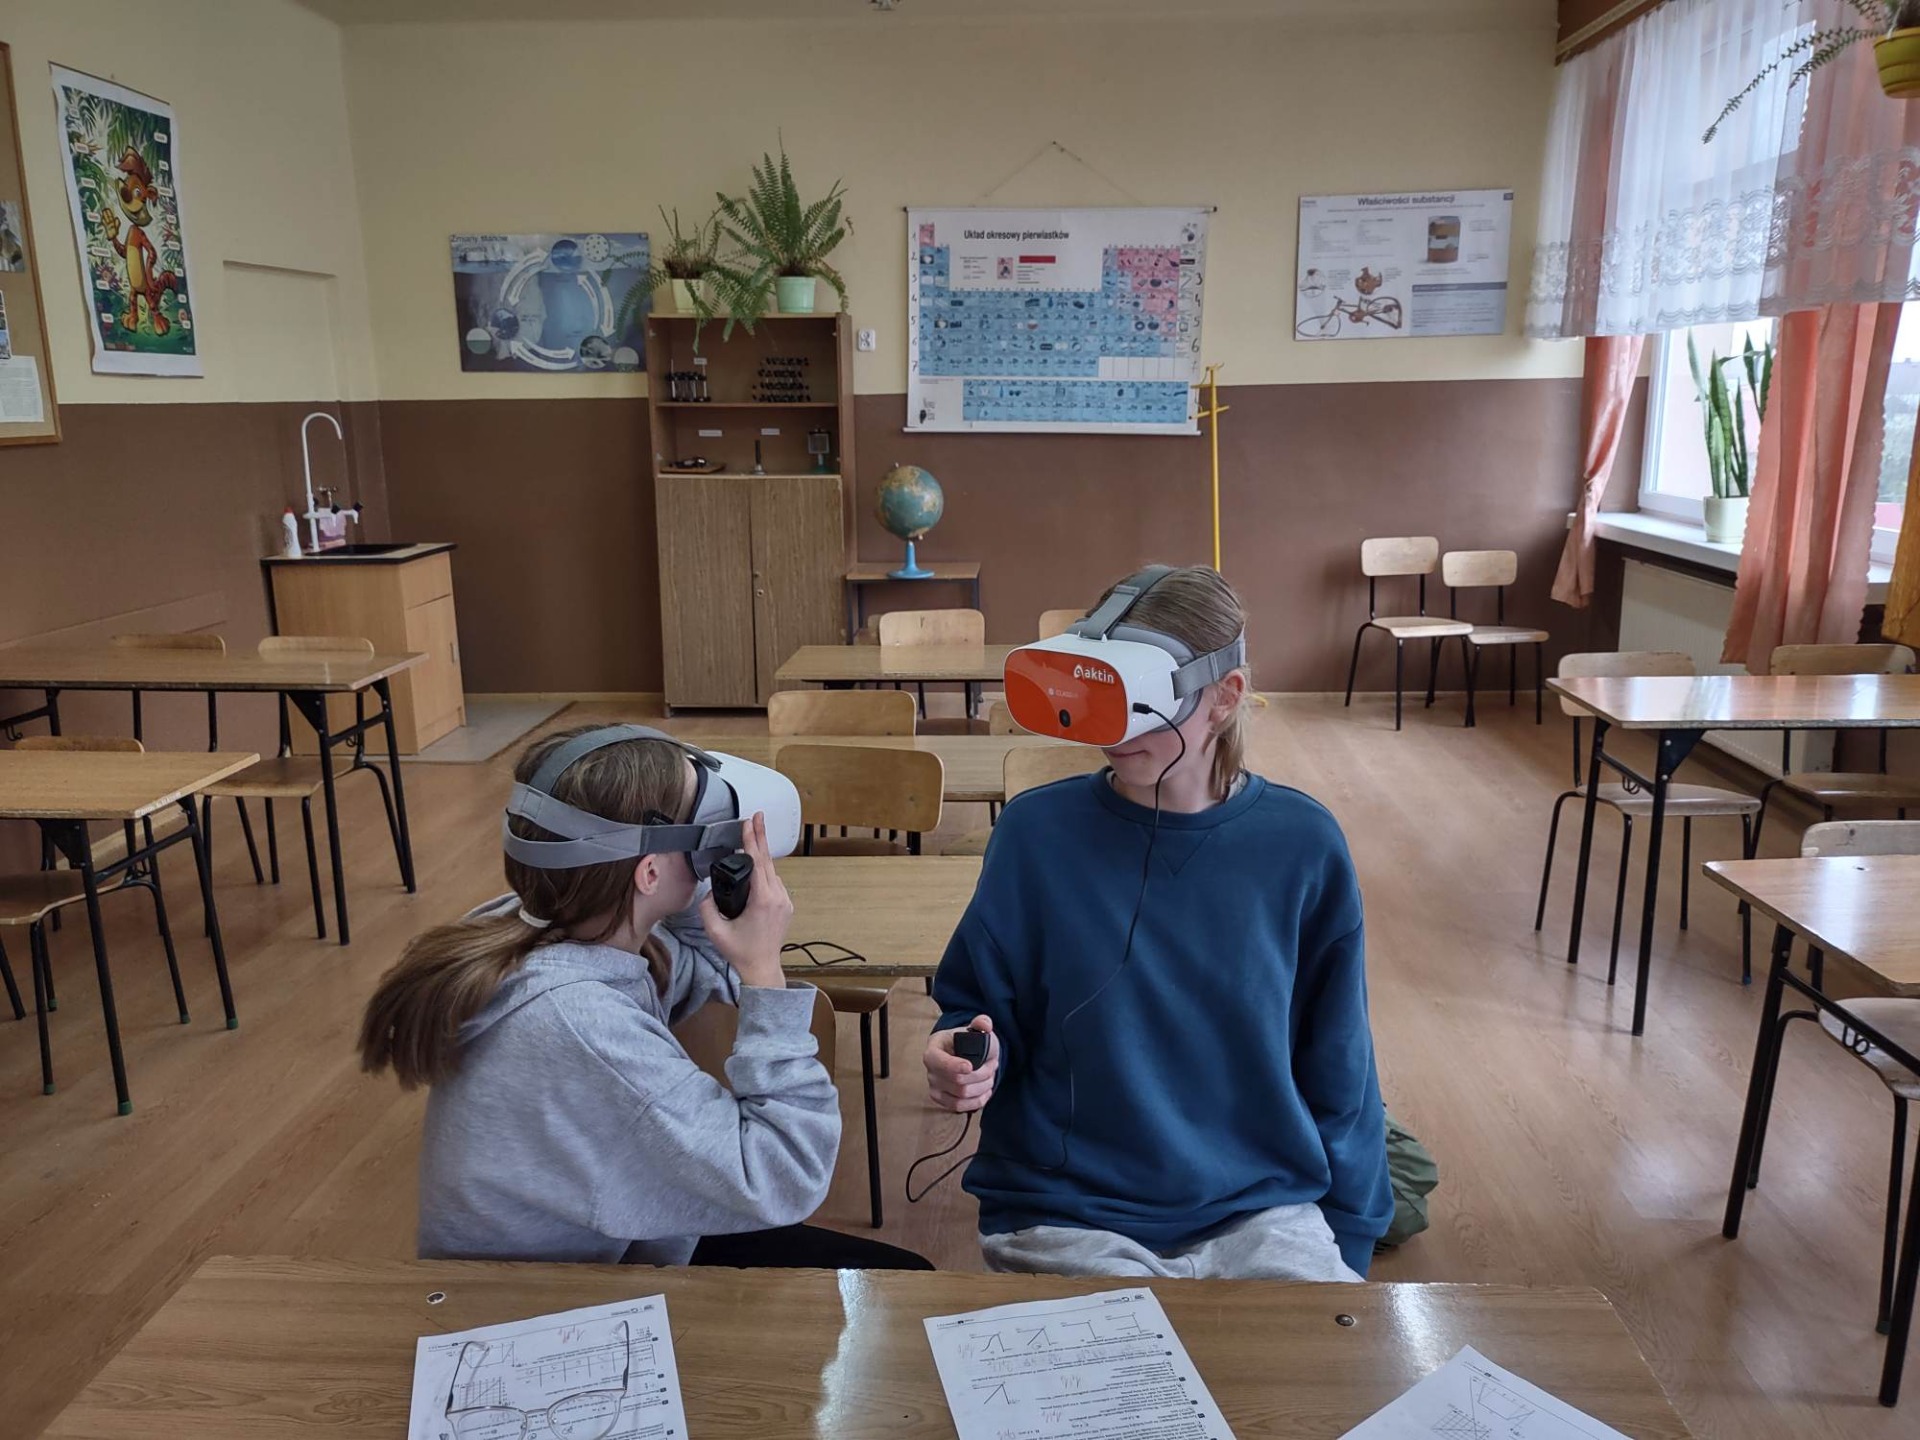 Uczniowie w sali lekcyjnej biorą udział w zajęciach z wirtualnej rzeczywistości w ramach projektu "Laboratoria przyszłości" 